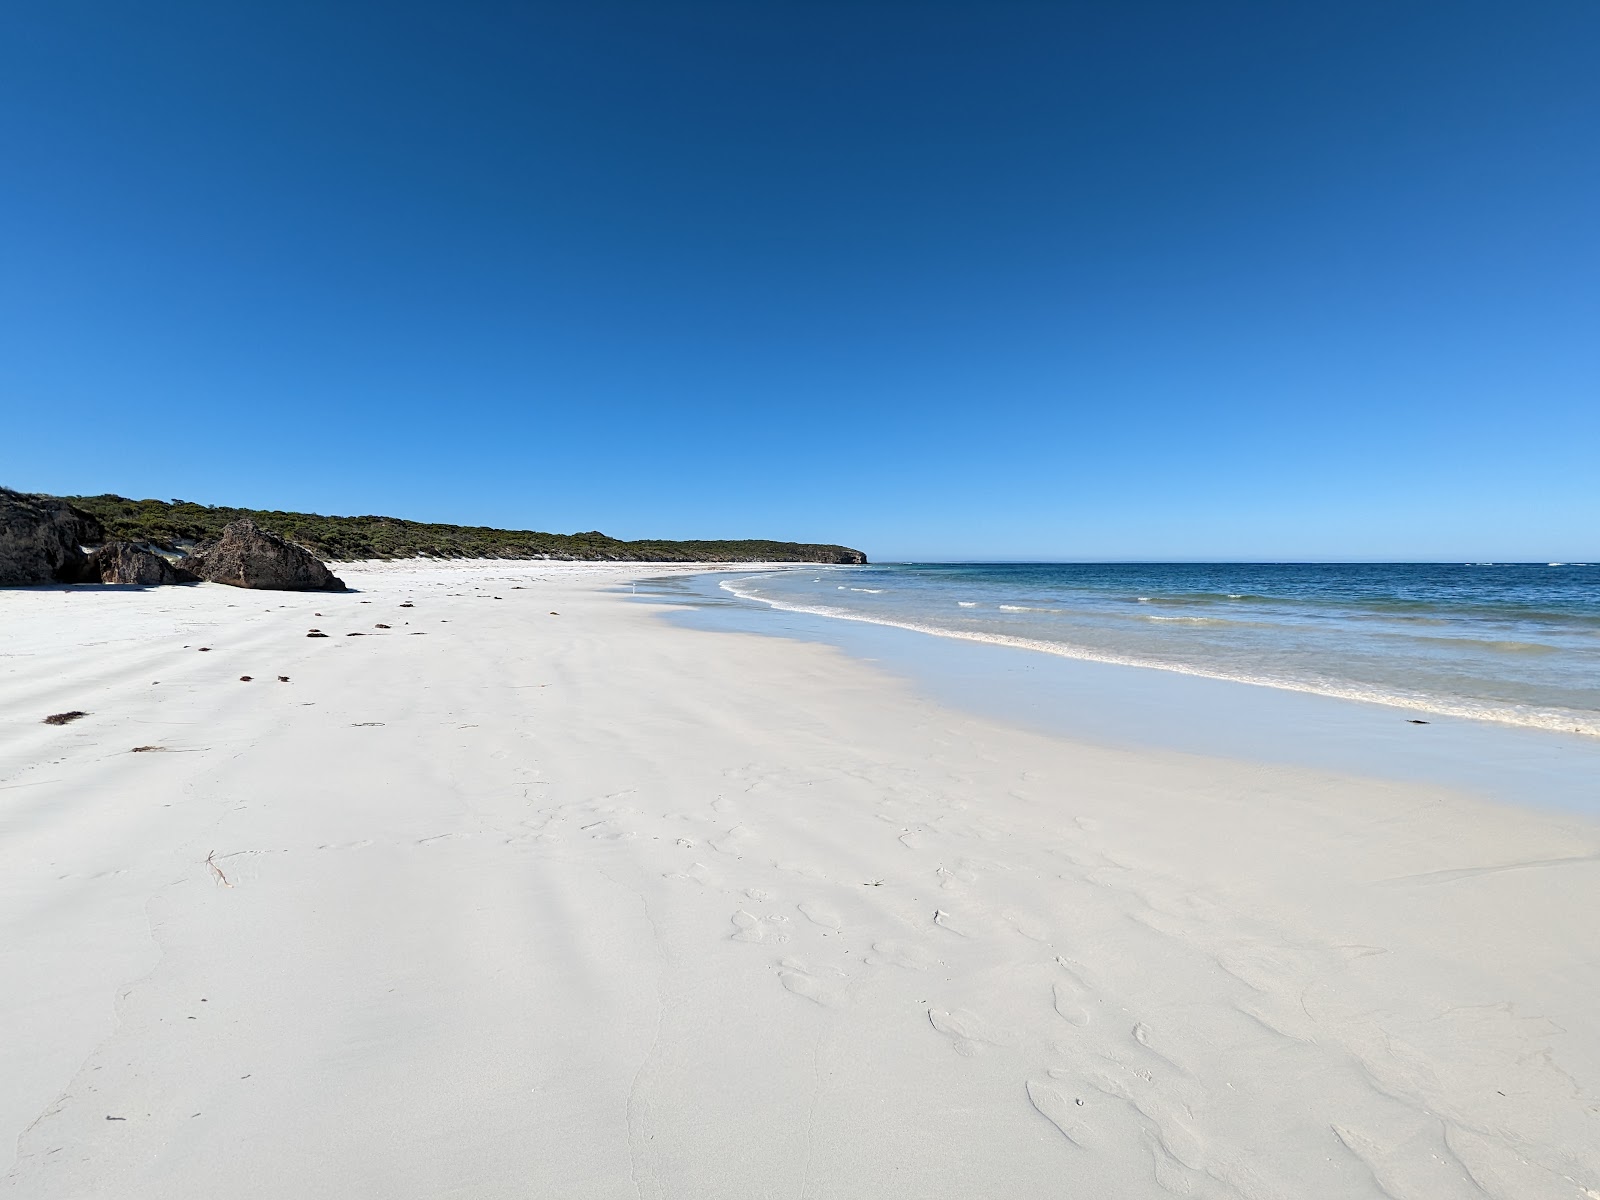 Zdjęcie Wheaton's Beach z powierzchnią biały piasek